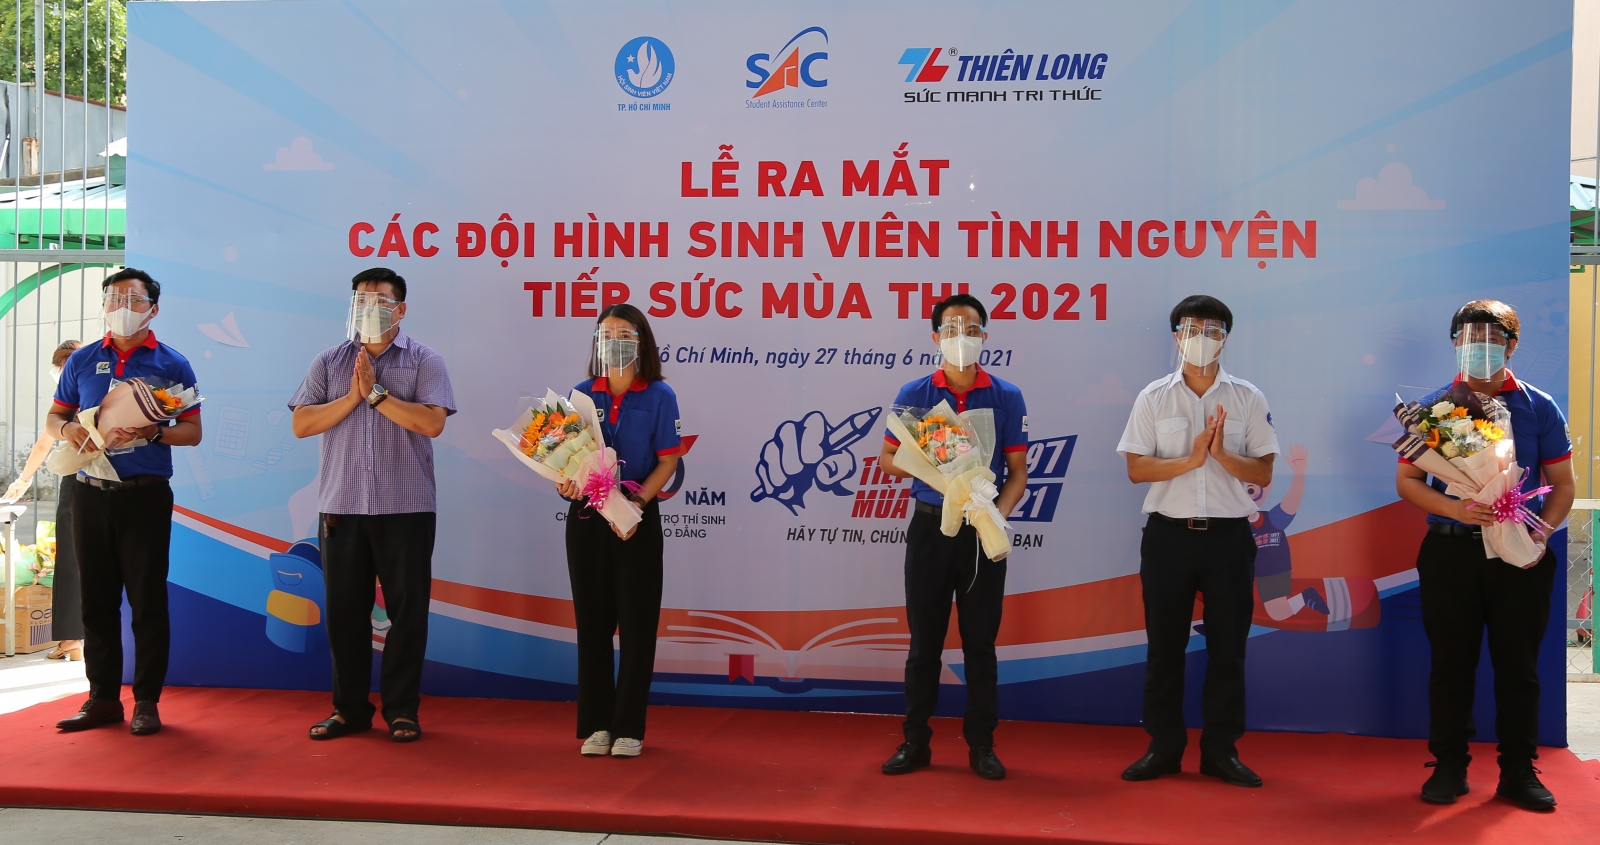 TP.HCM: Hơn 8.700 sinh viên tình nguyện tham gia Tiếp sức mùa thi năm 2021